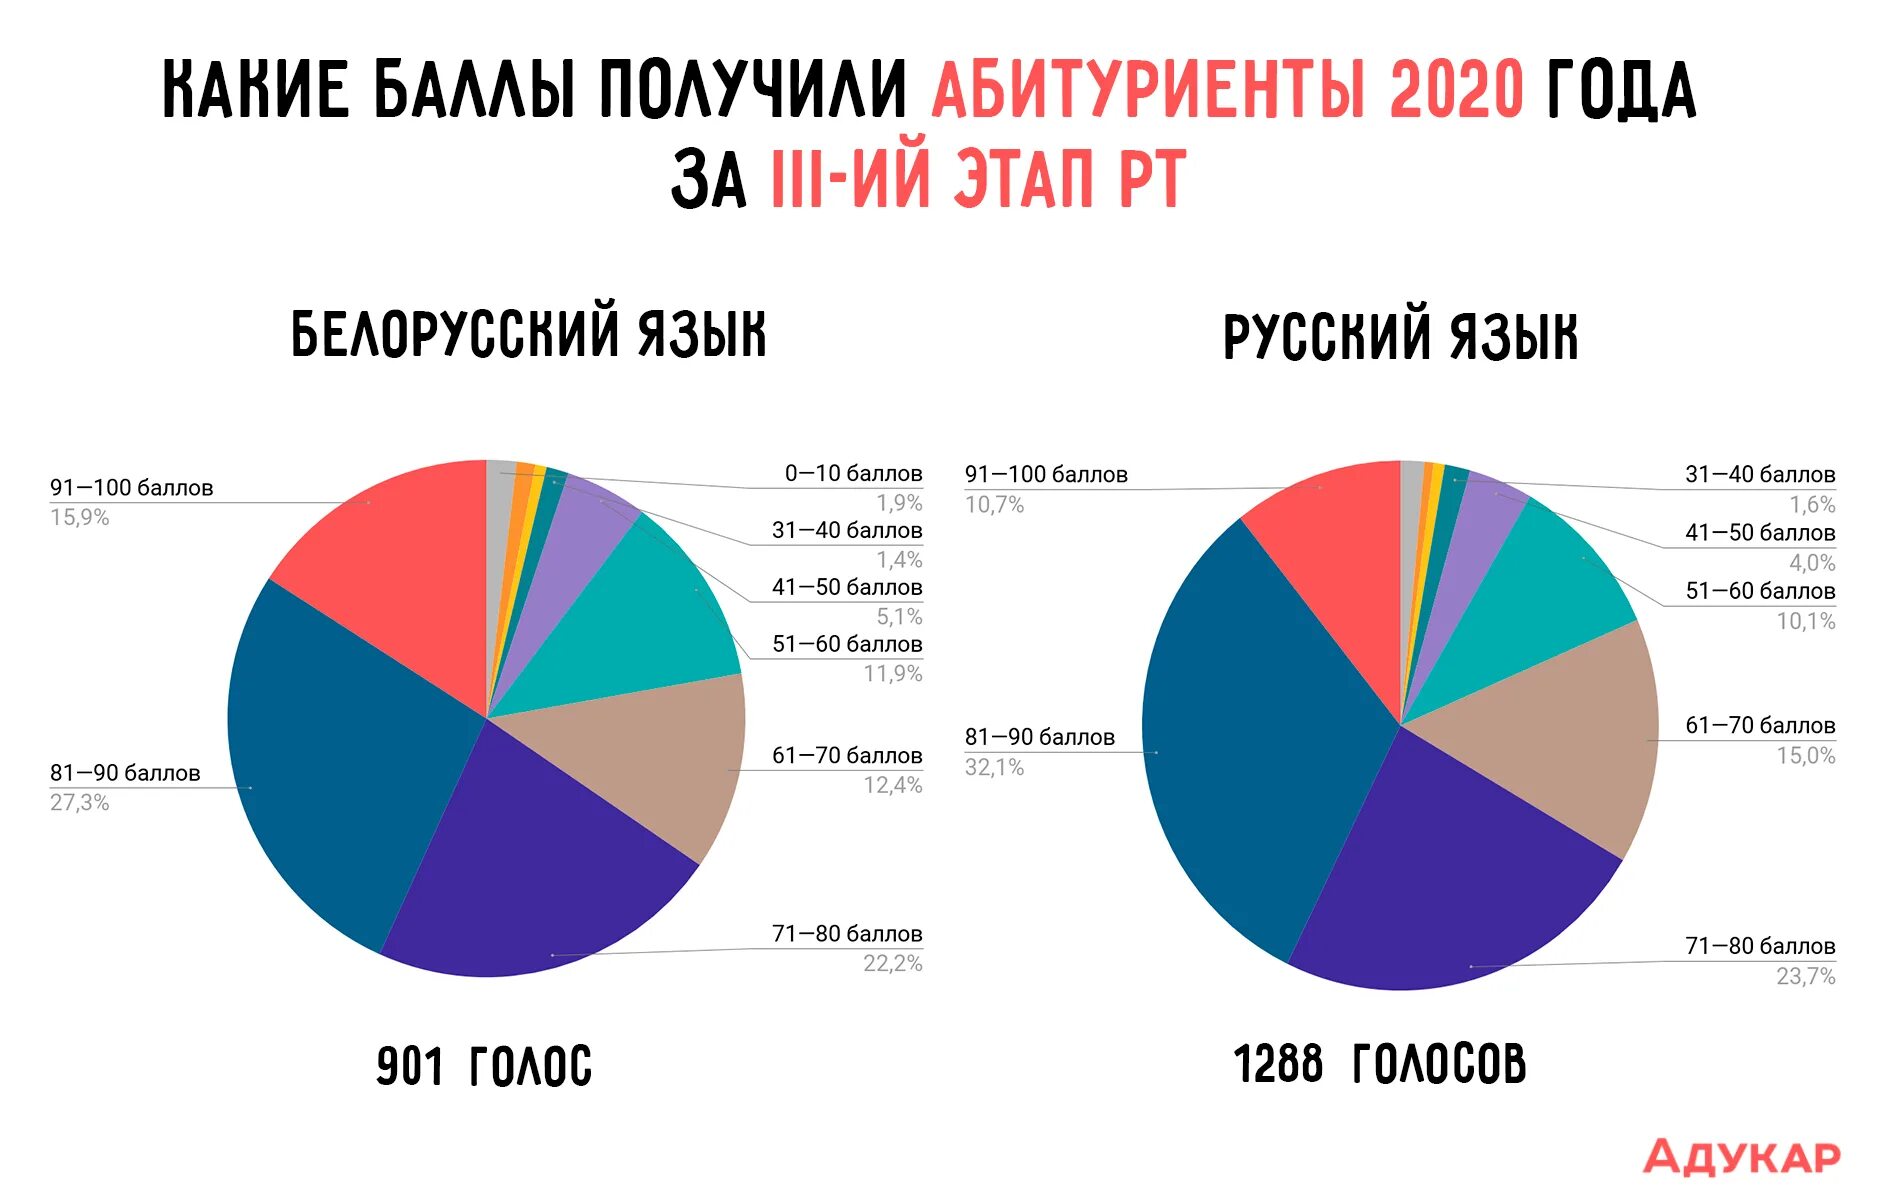 3 этап рт 2020. Сколько человек говорит на белорусском языке в Белоруссии.